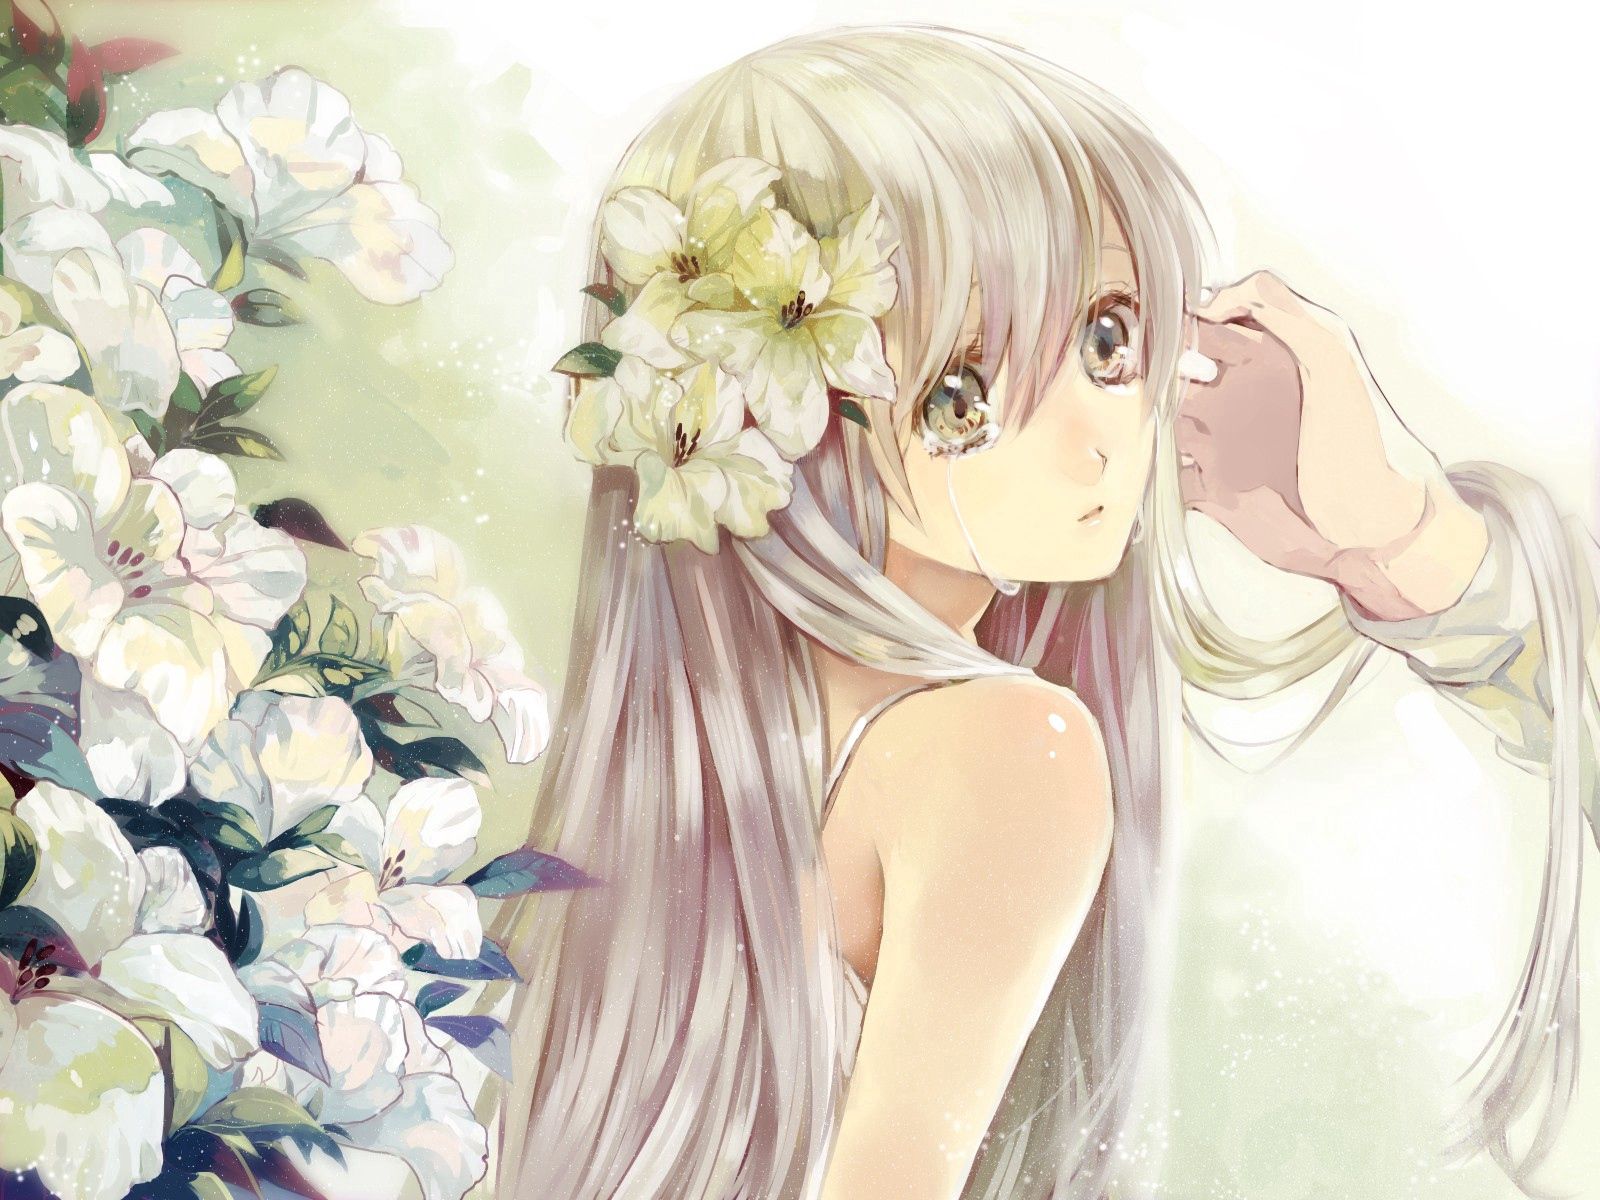 blonde, sadness, anime, flowers, girl, tears wallpaper for mobile